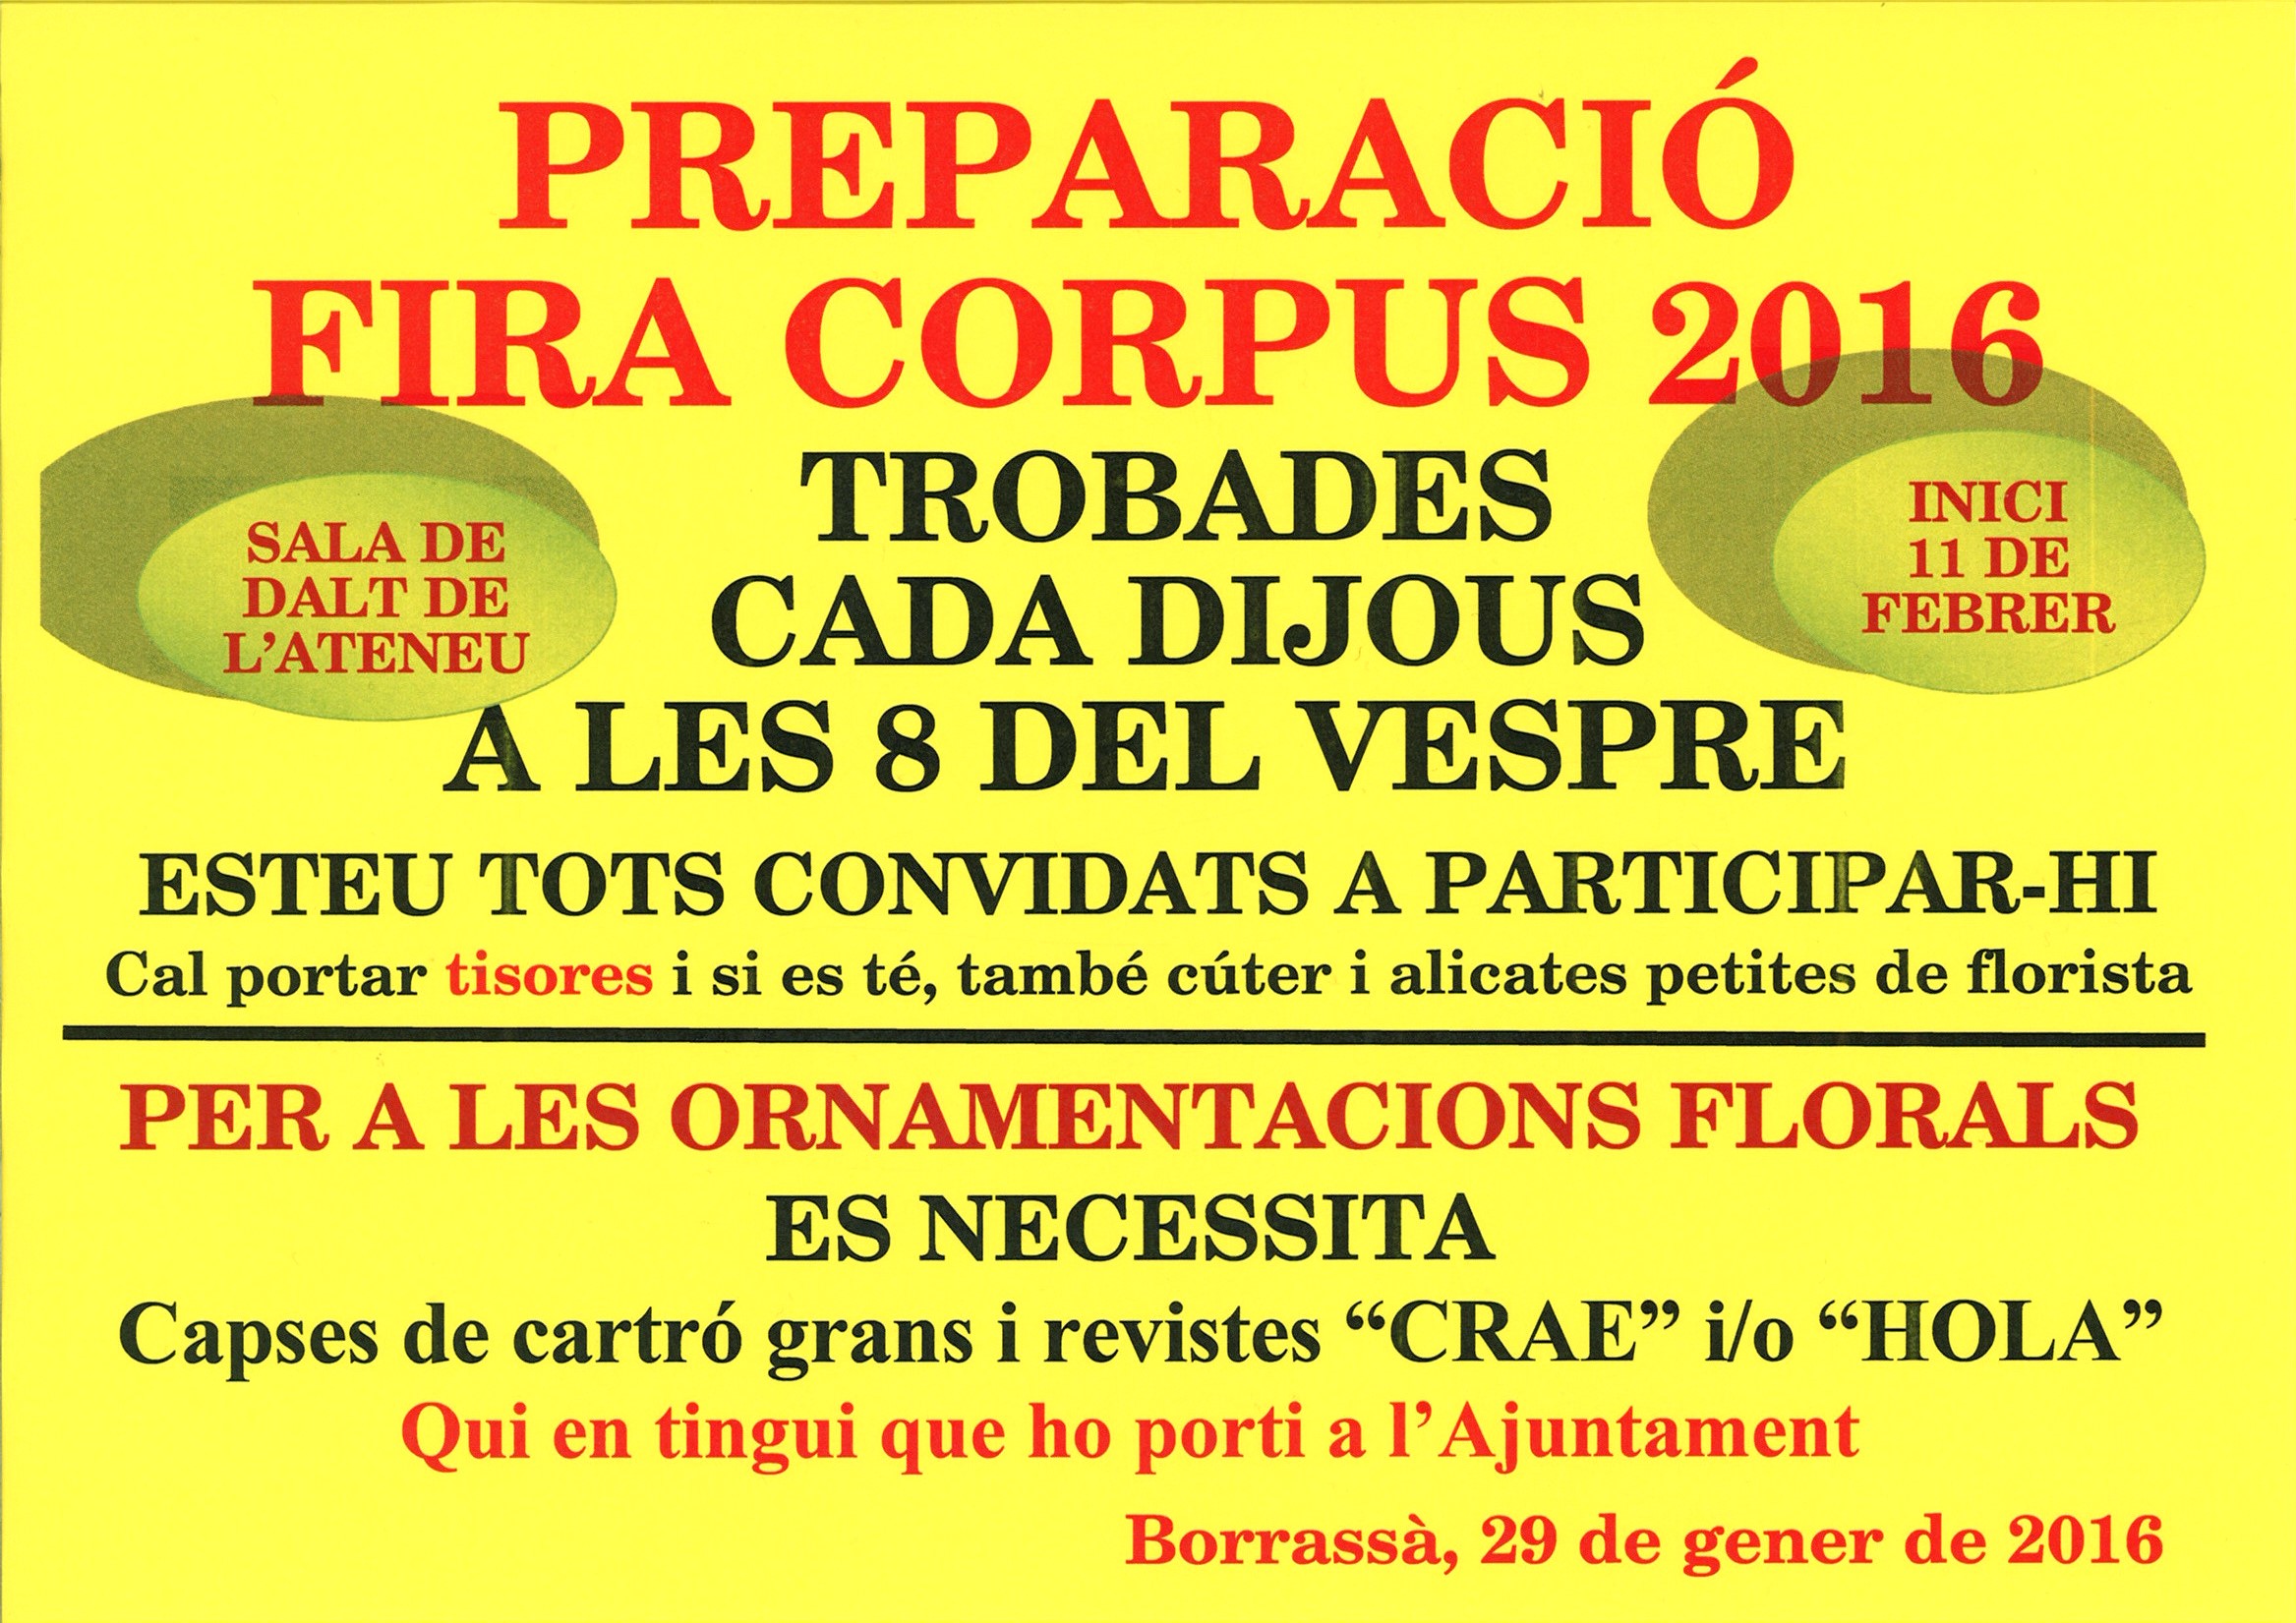 El proper dijous 11 de febrer començaran les trobades per preparar l'onzena Fira del Corpus. Per a les ornamentacions florals es necessiten: capses grans i revistes.